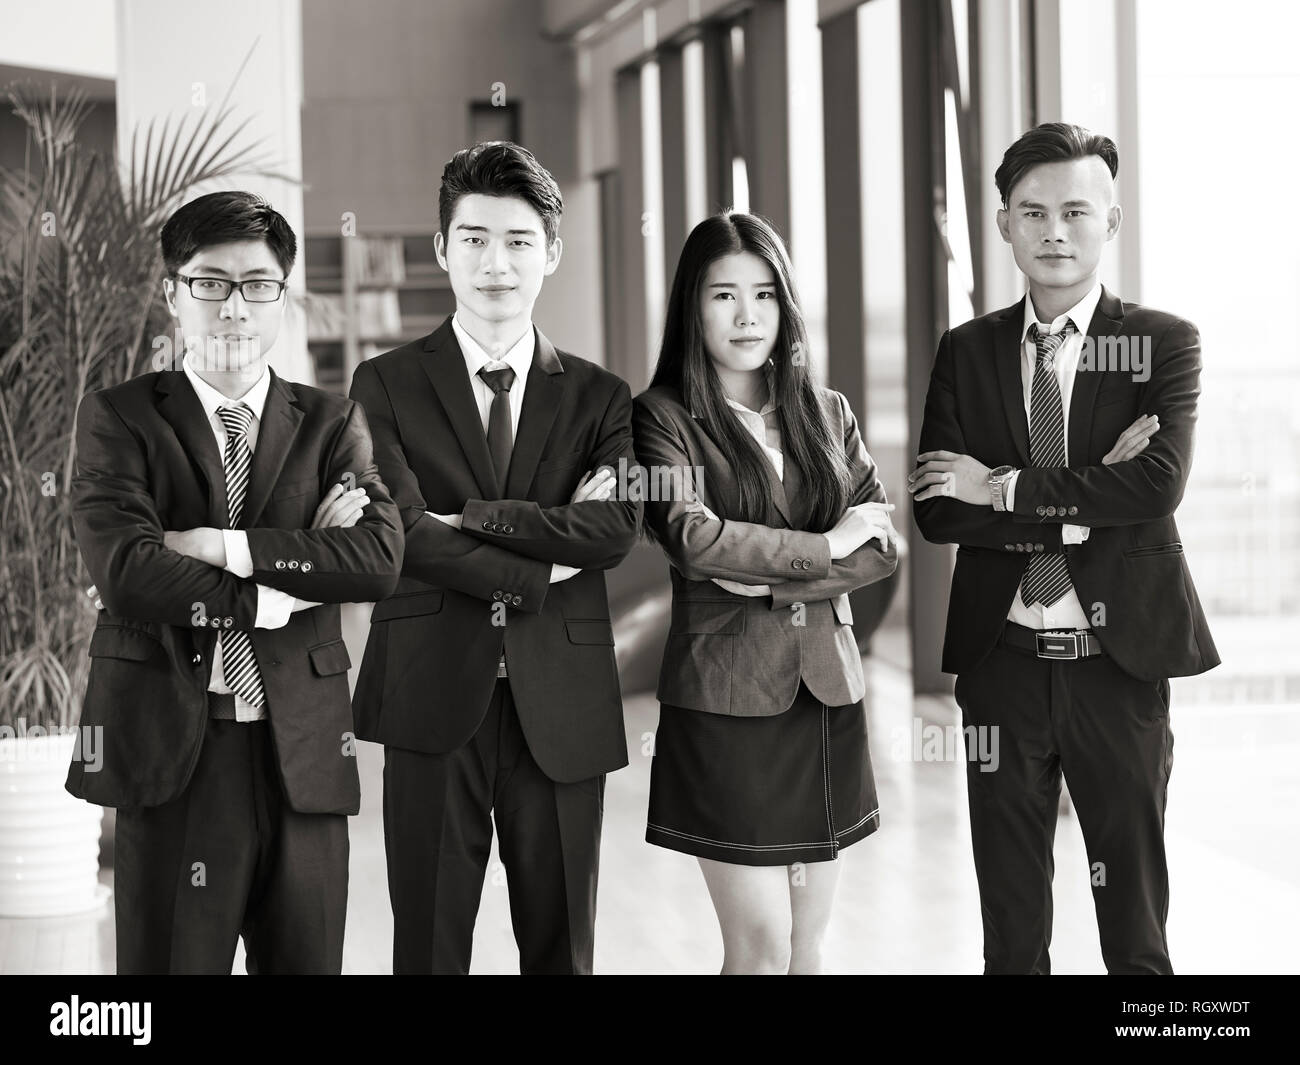 Portrait d'un groupe de jeunes gens d'affaires asiatiques standing in office les bras croisés, looking at camera, noir et blanc. Banque D'Images